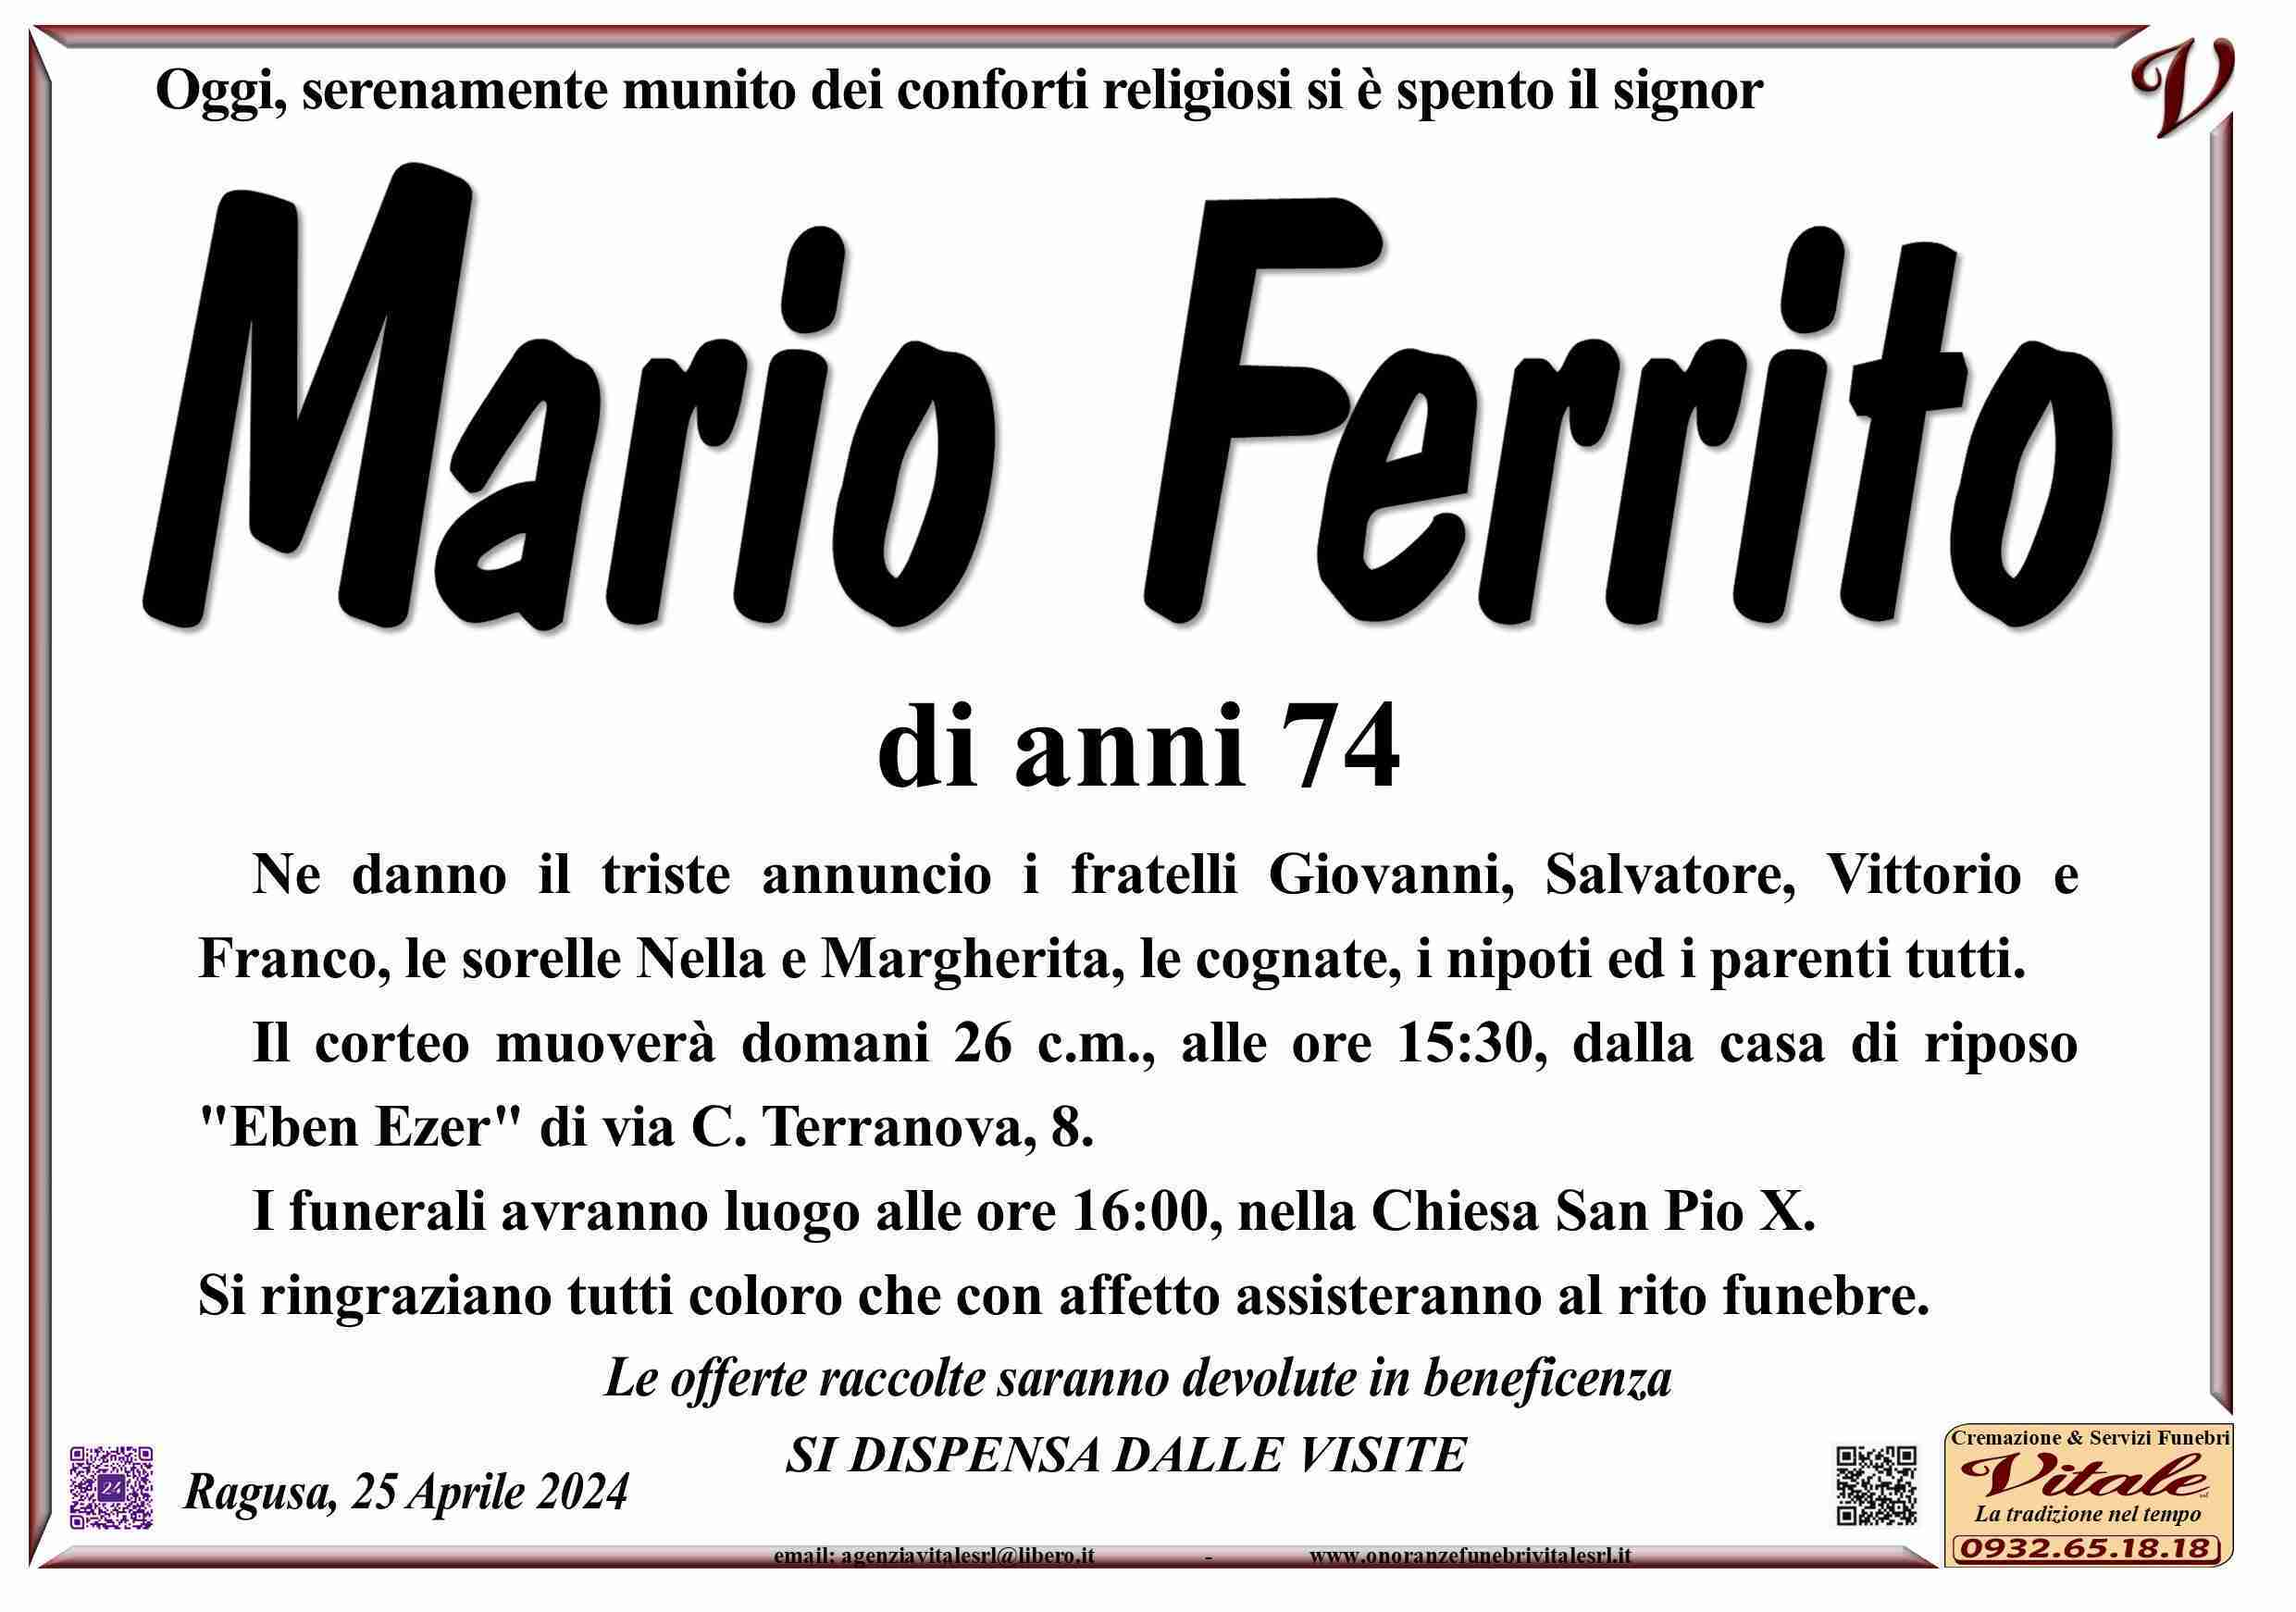 Mario Ferrito